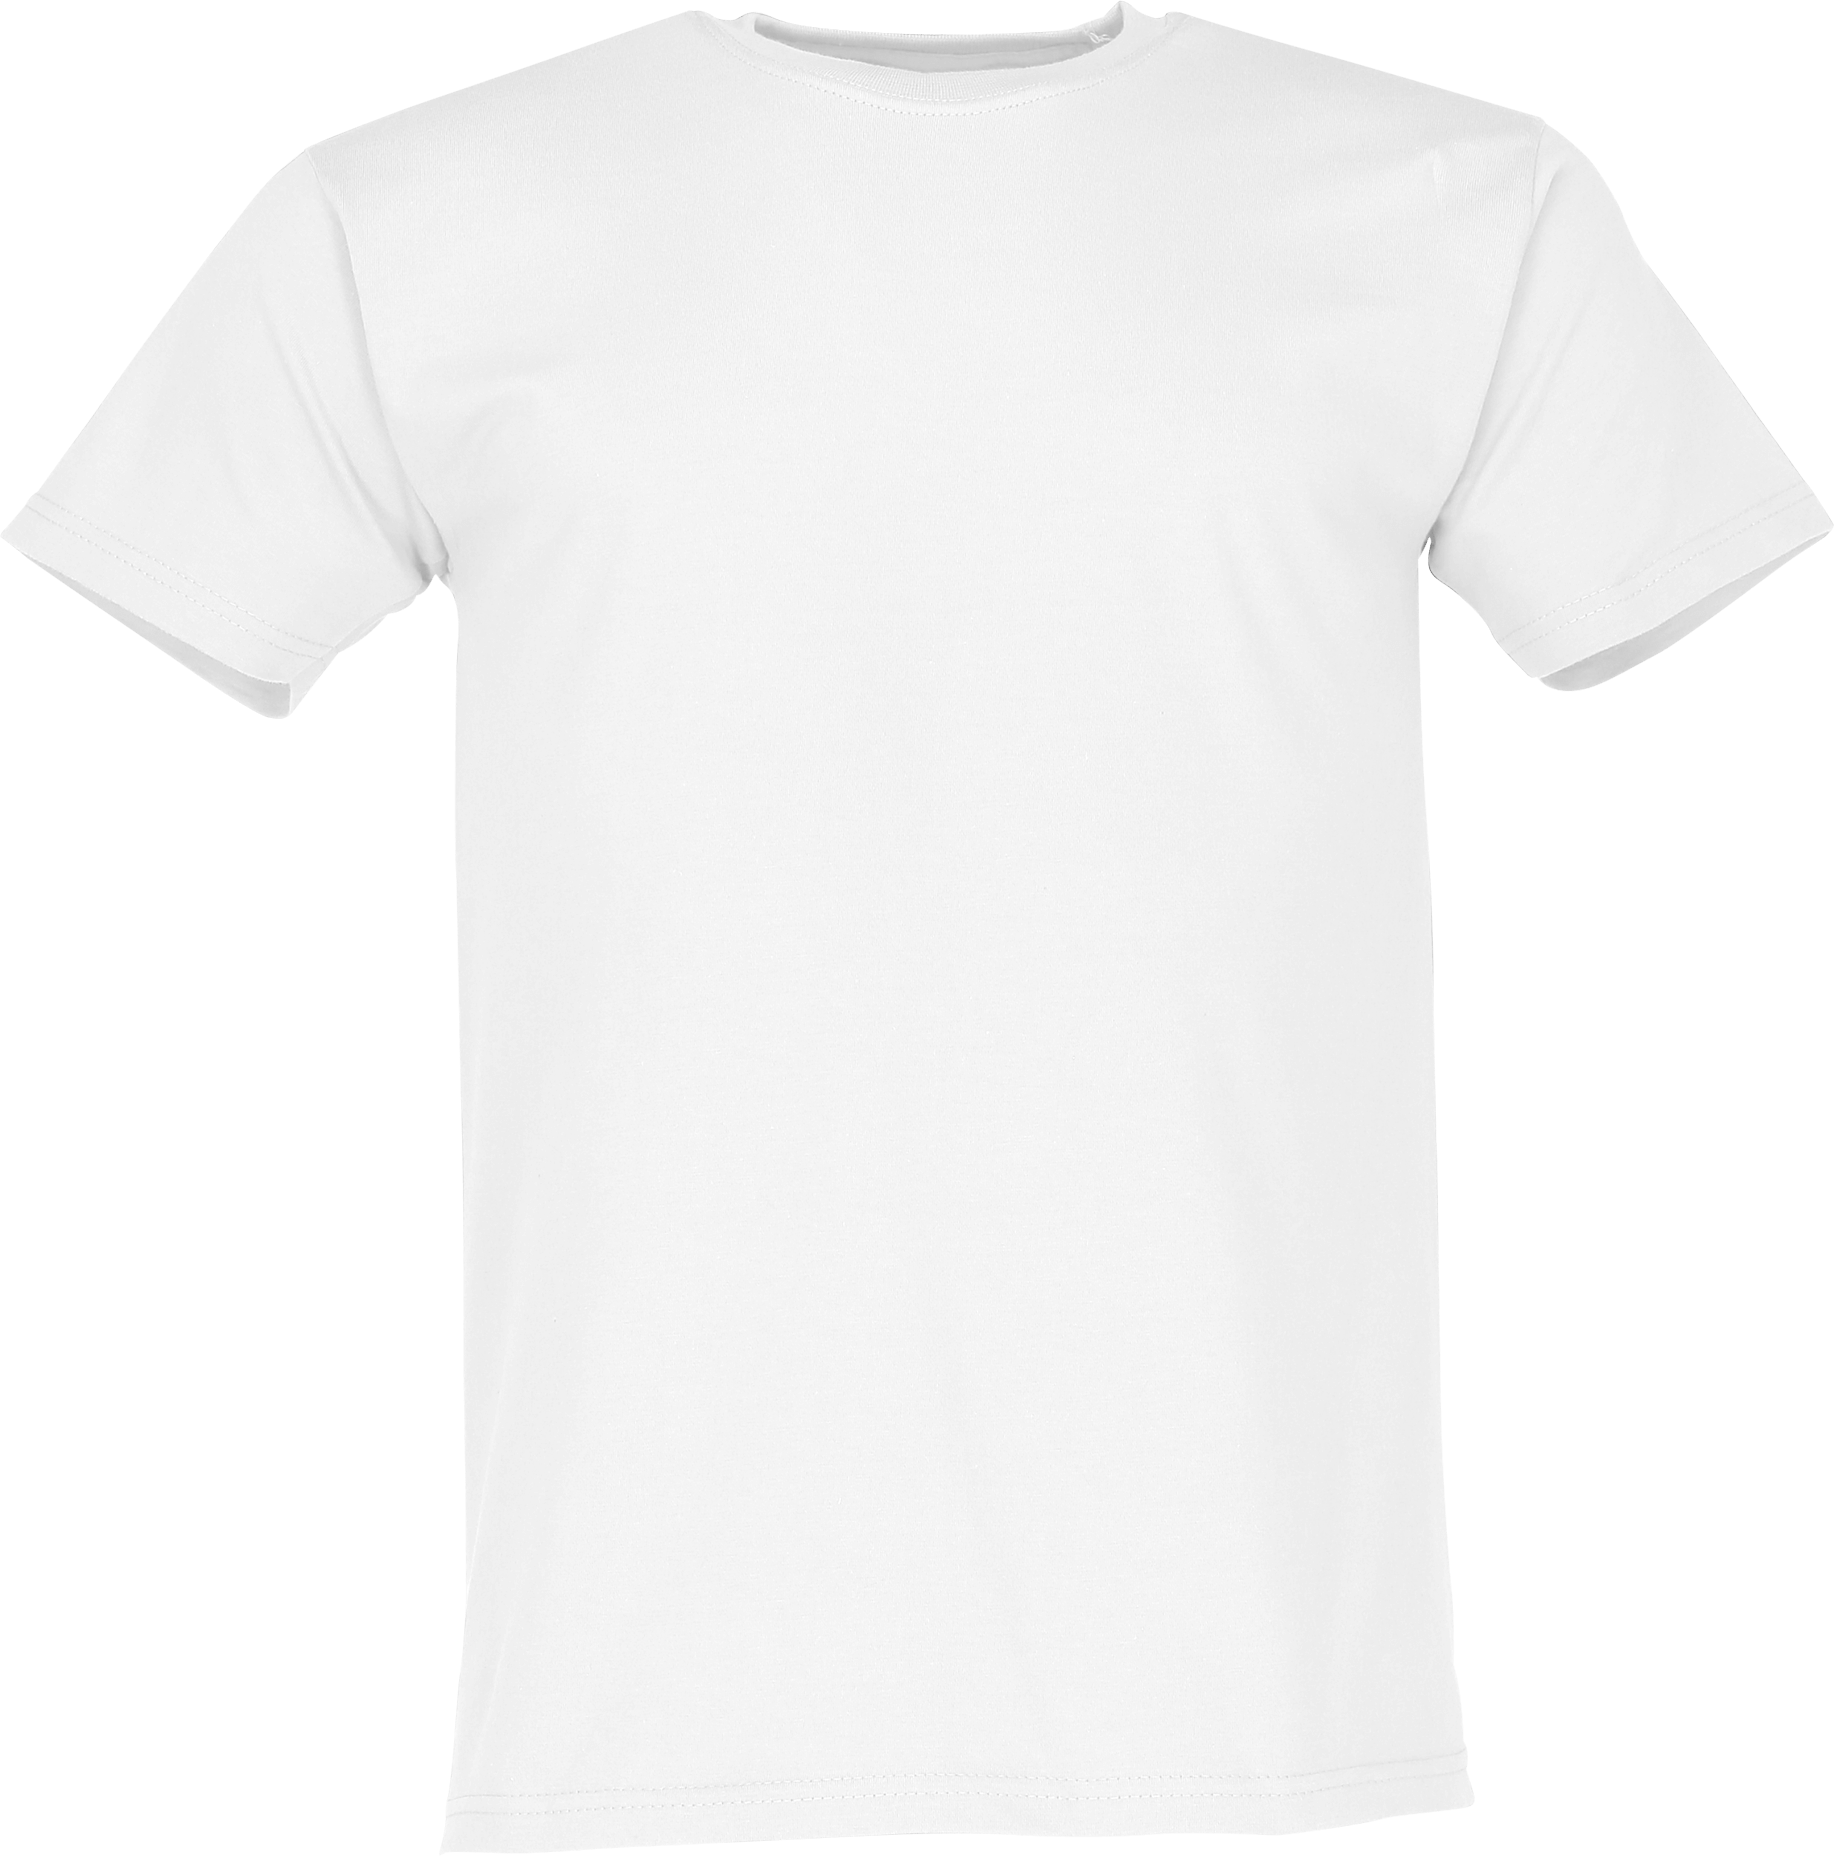 ORIGINAL T - leichtes Herren Basic T-Shirt, weiß, M